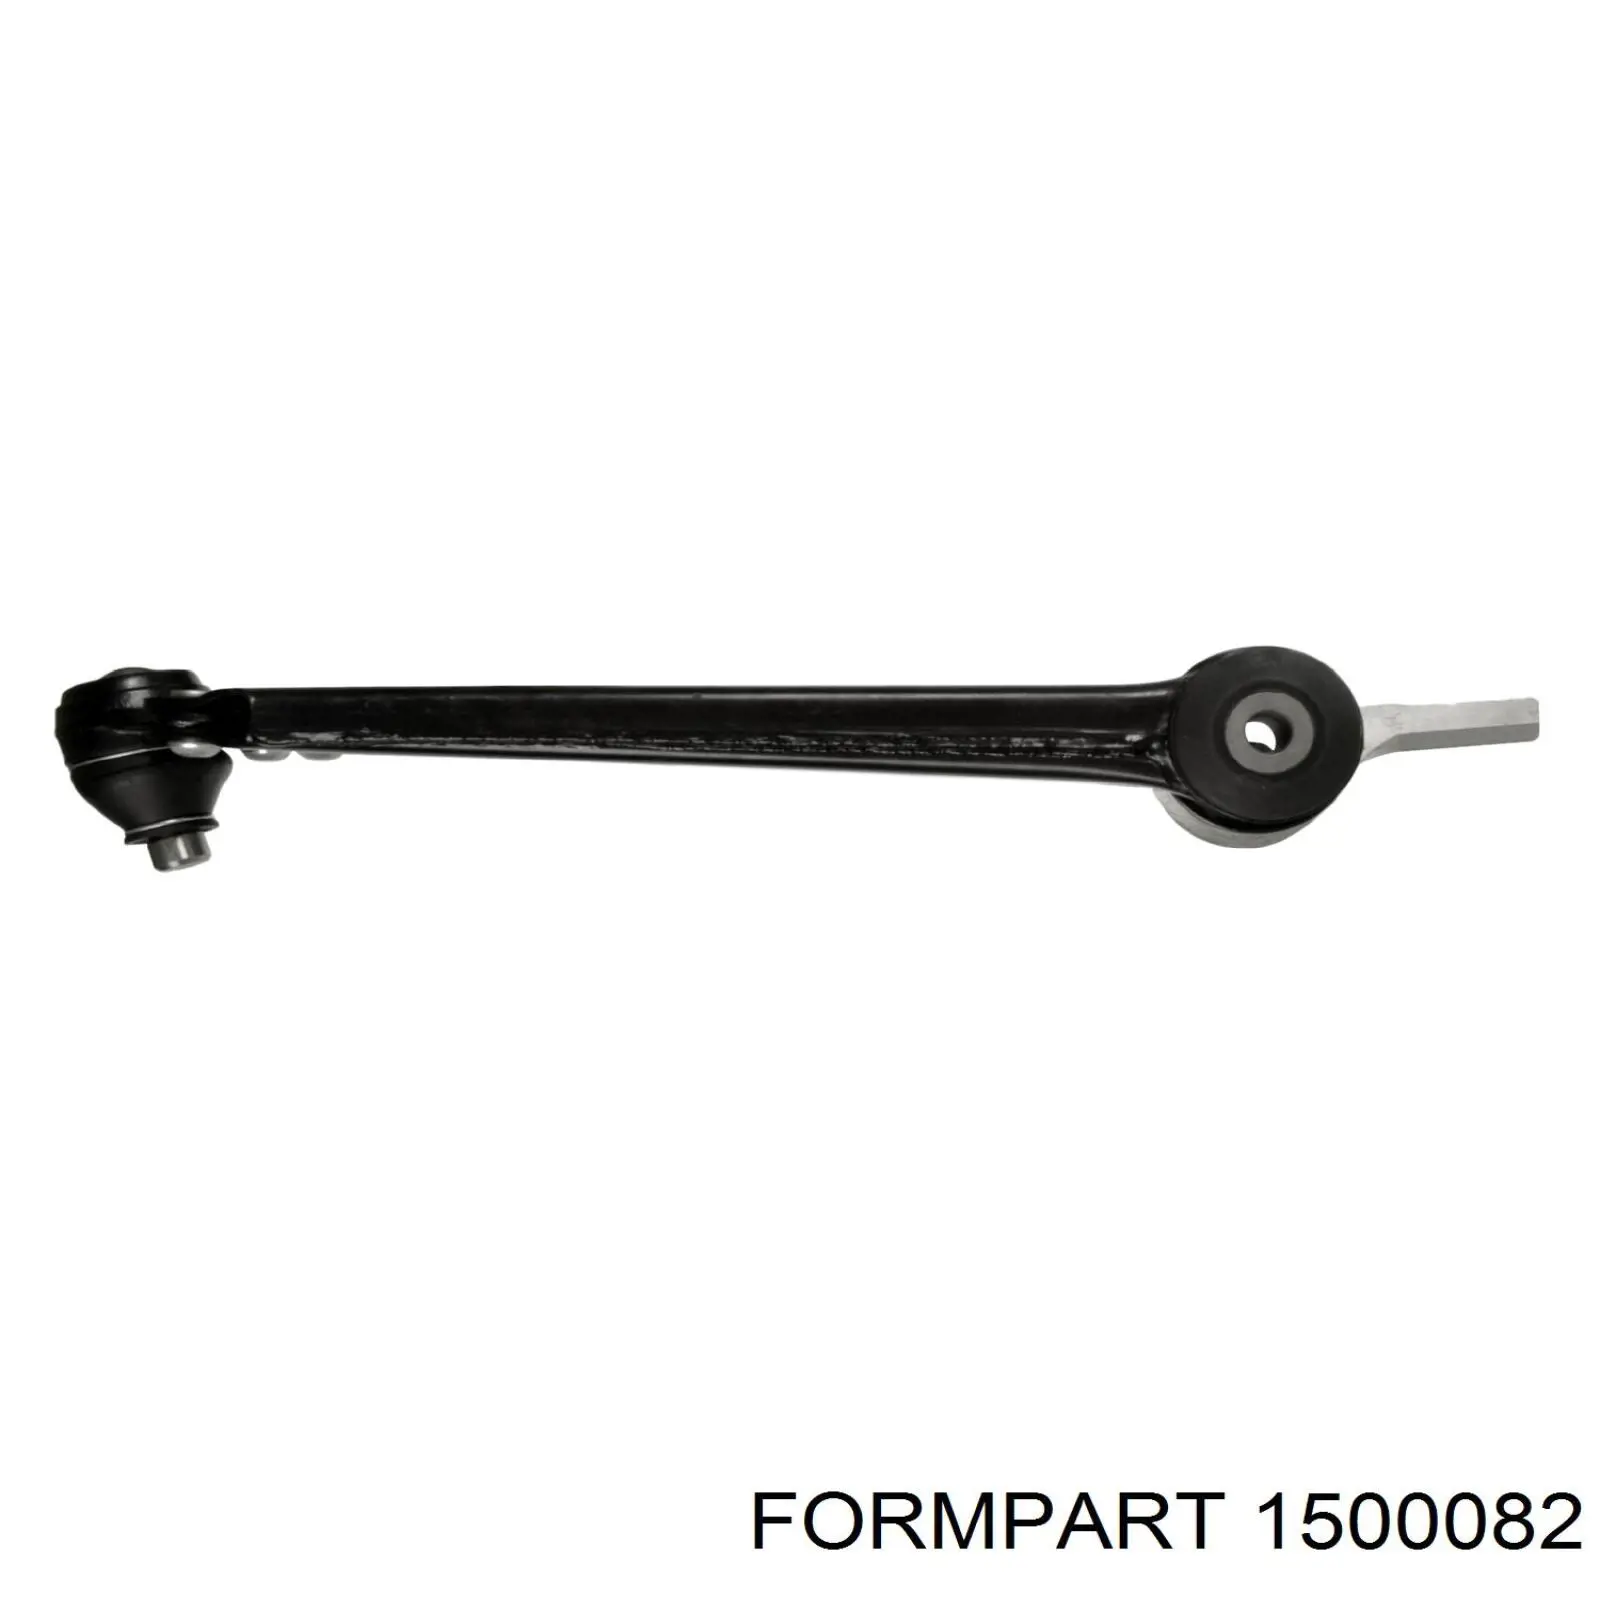 1500082 Formpart/Otoform silentblock de suspensión delantero inferior